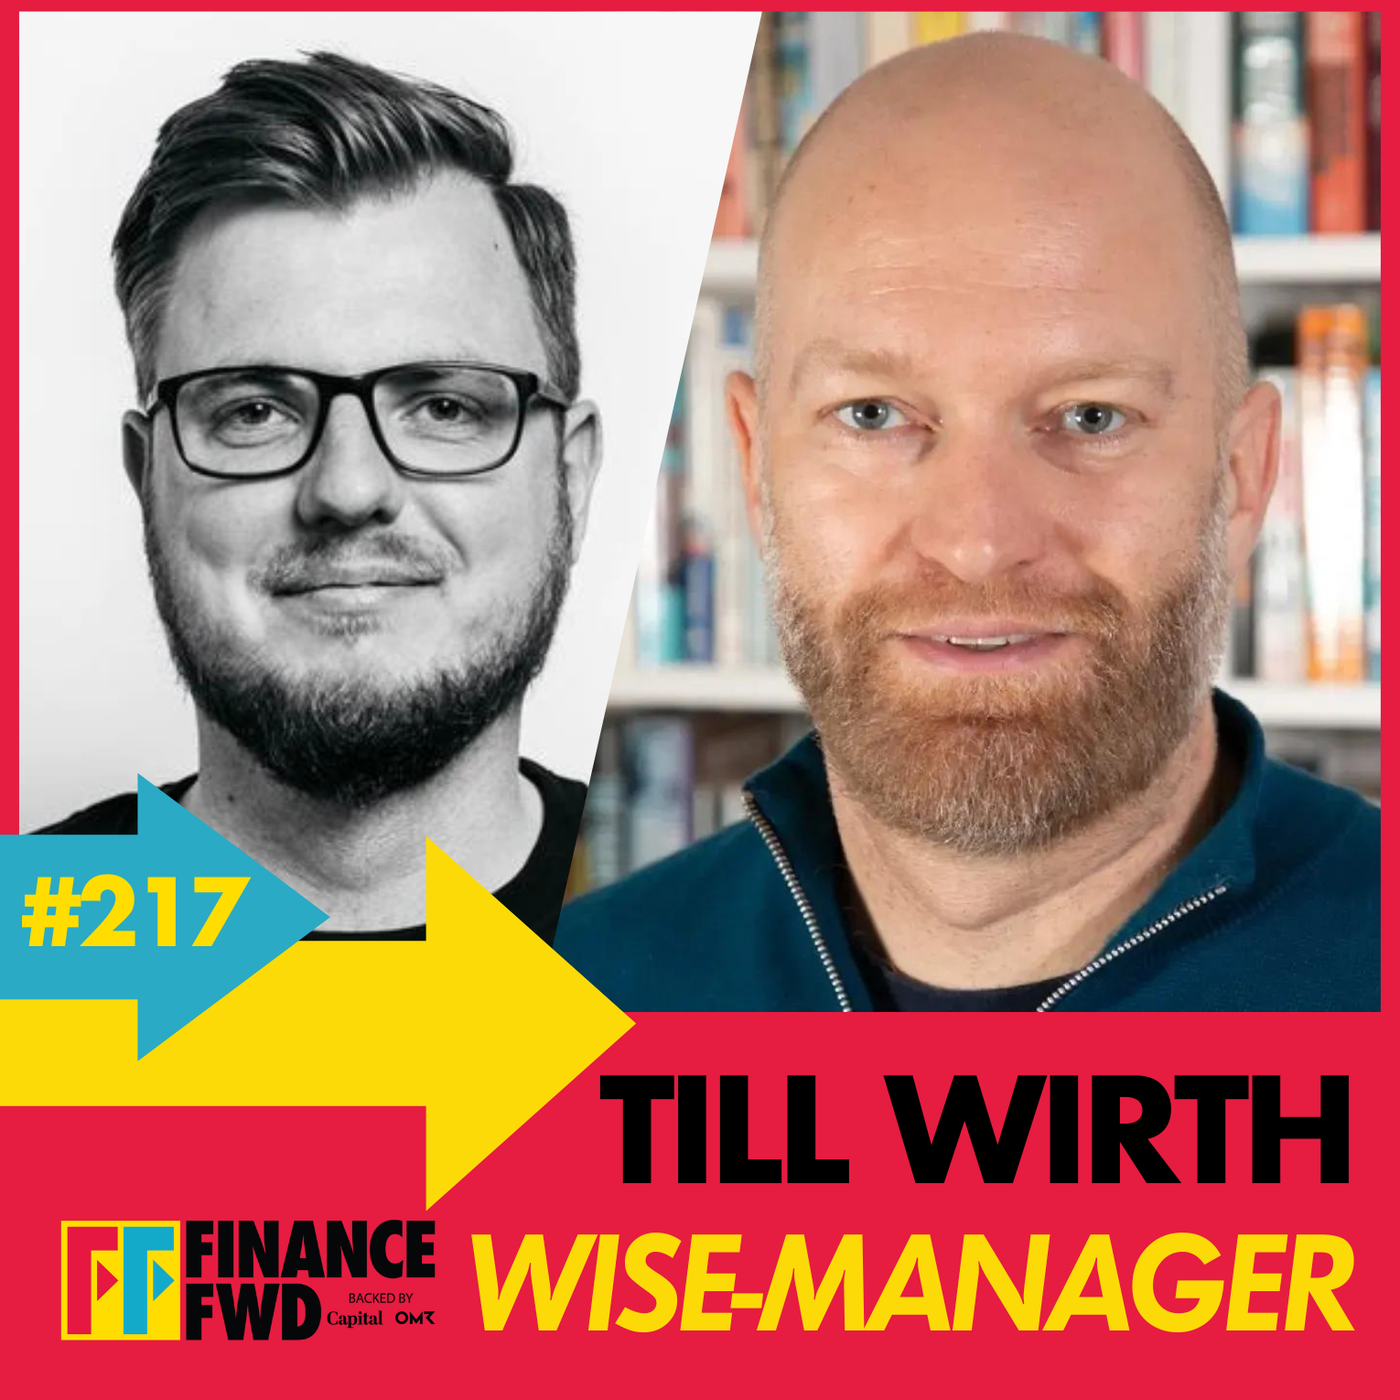 FinanceFWD #217 mit Wise-Manager Till Wirth